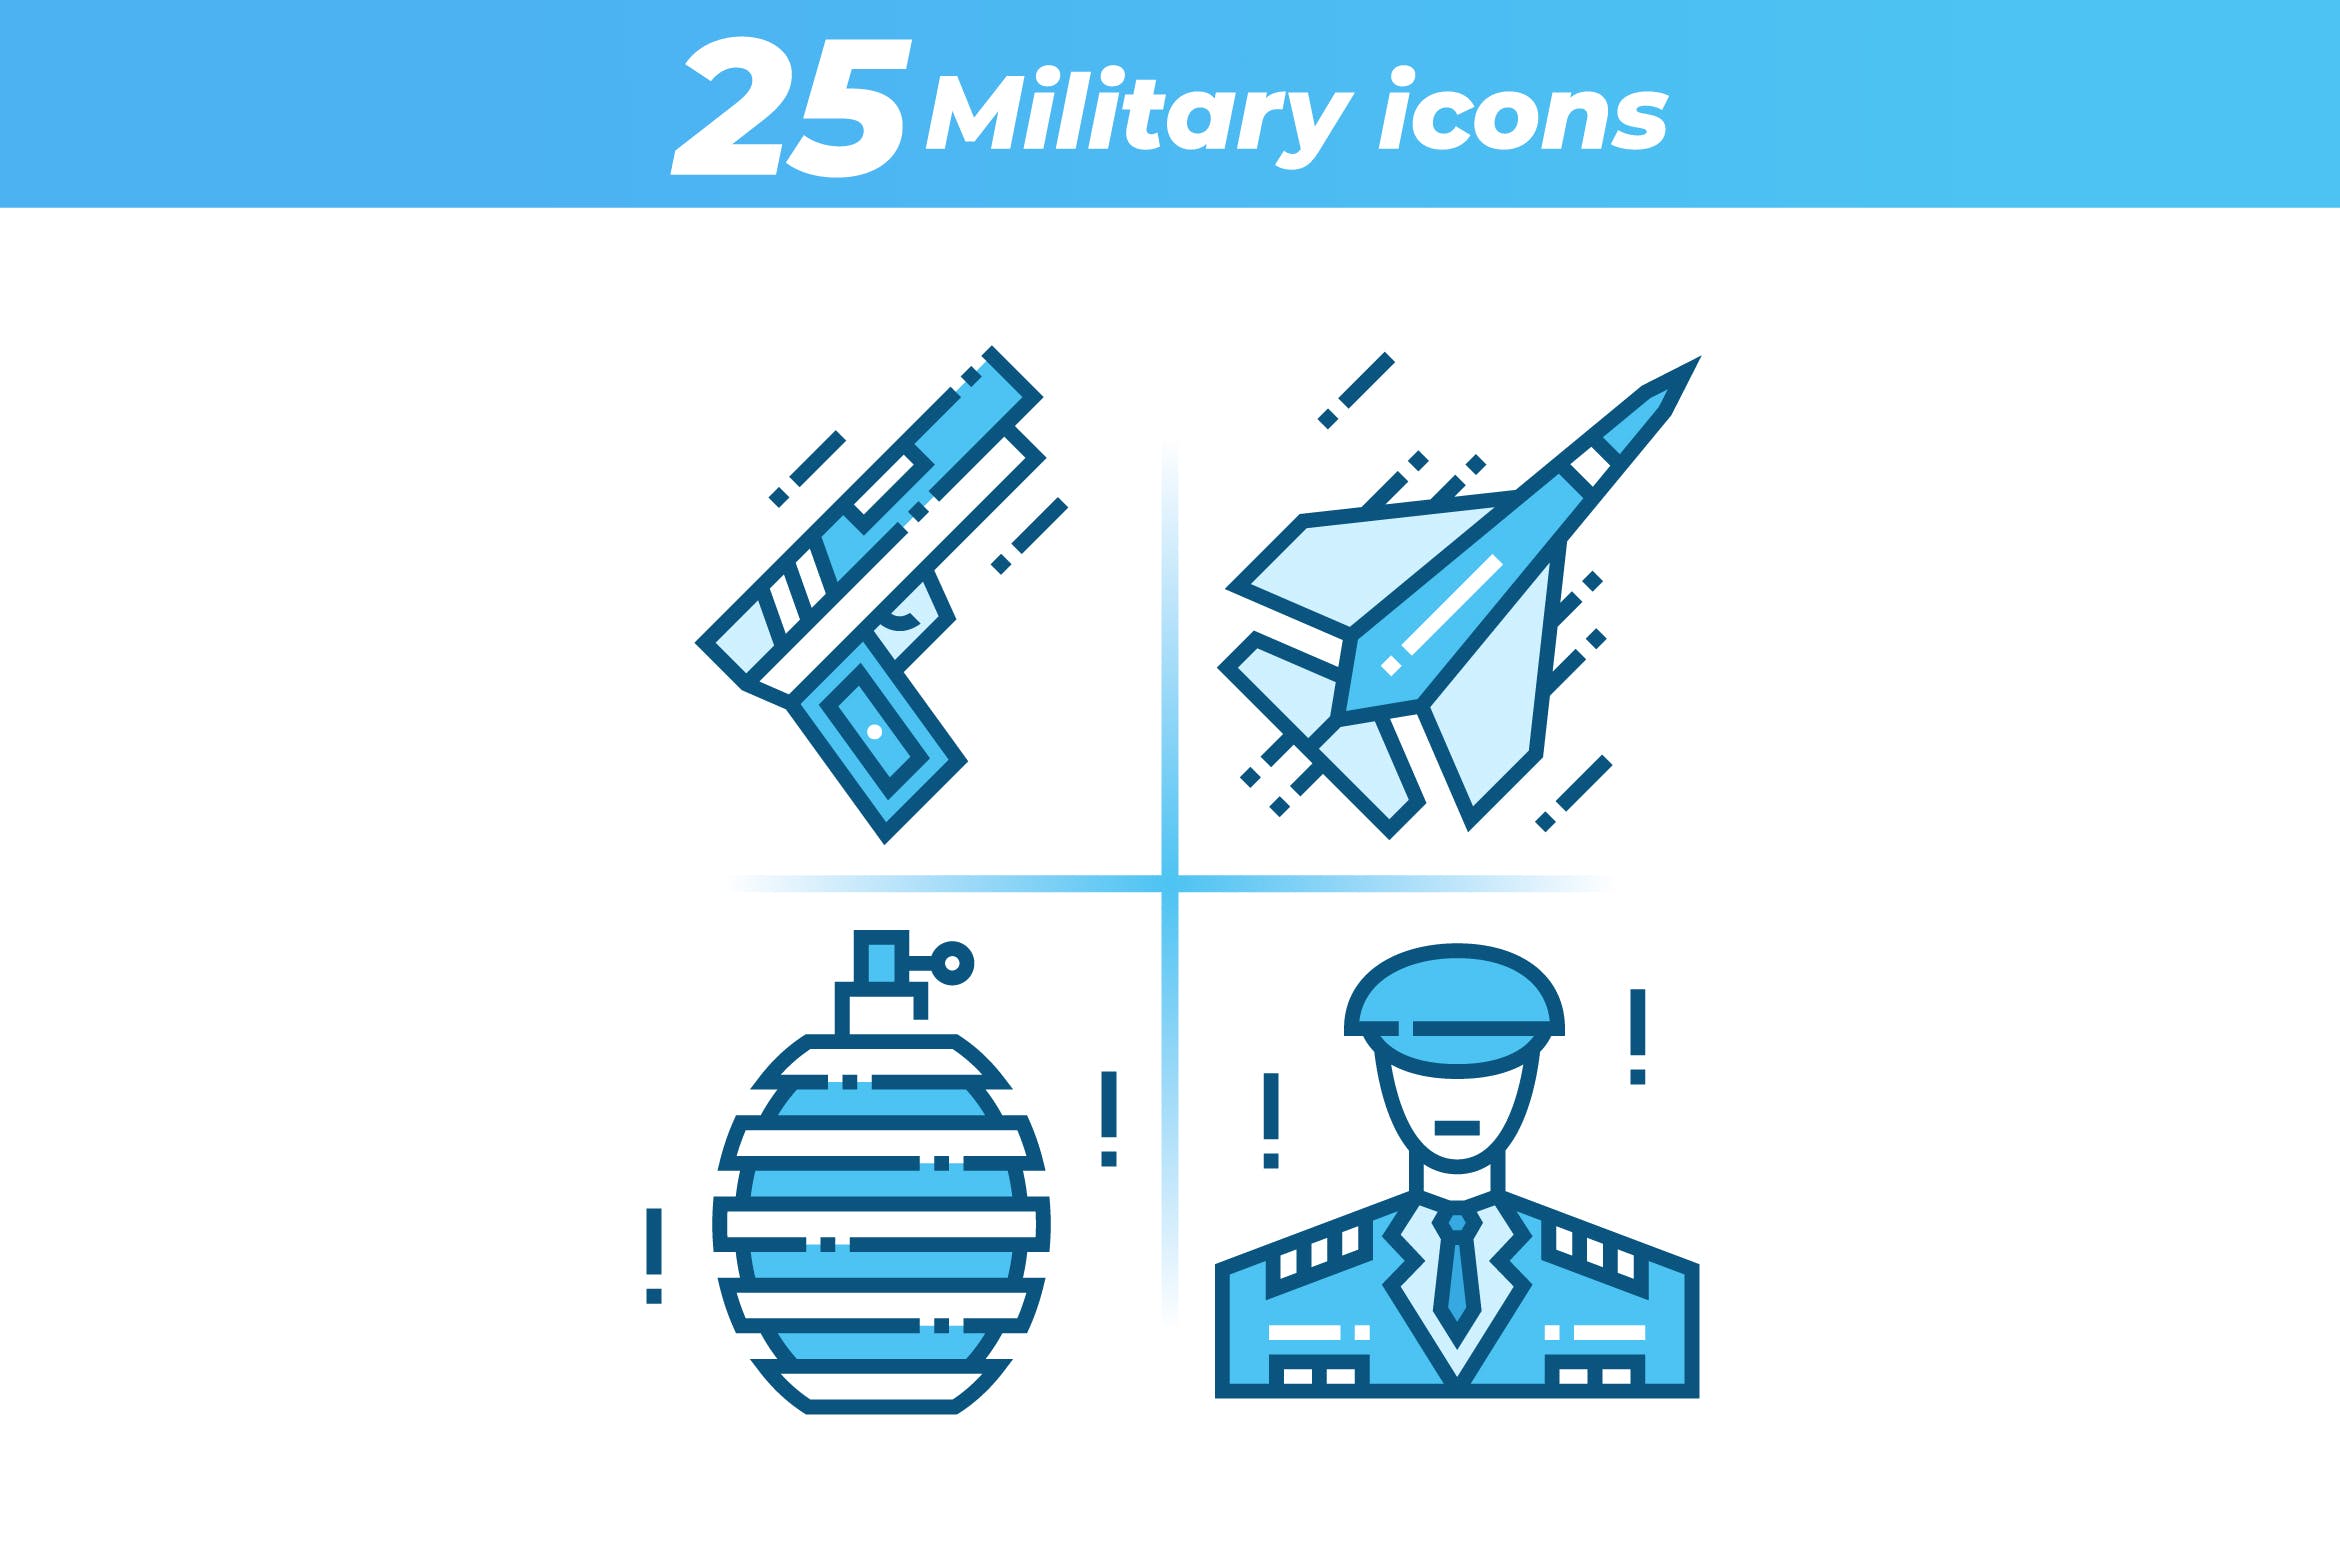 25枚军事主题矢量16设计素材网精选图标 25 Military Icons插图